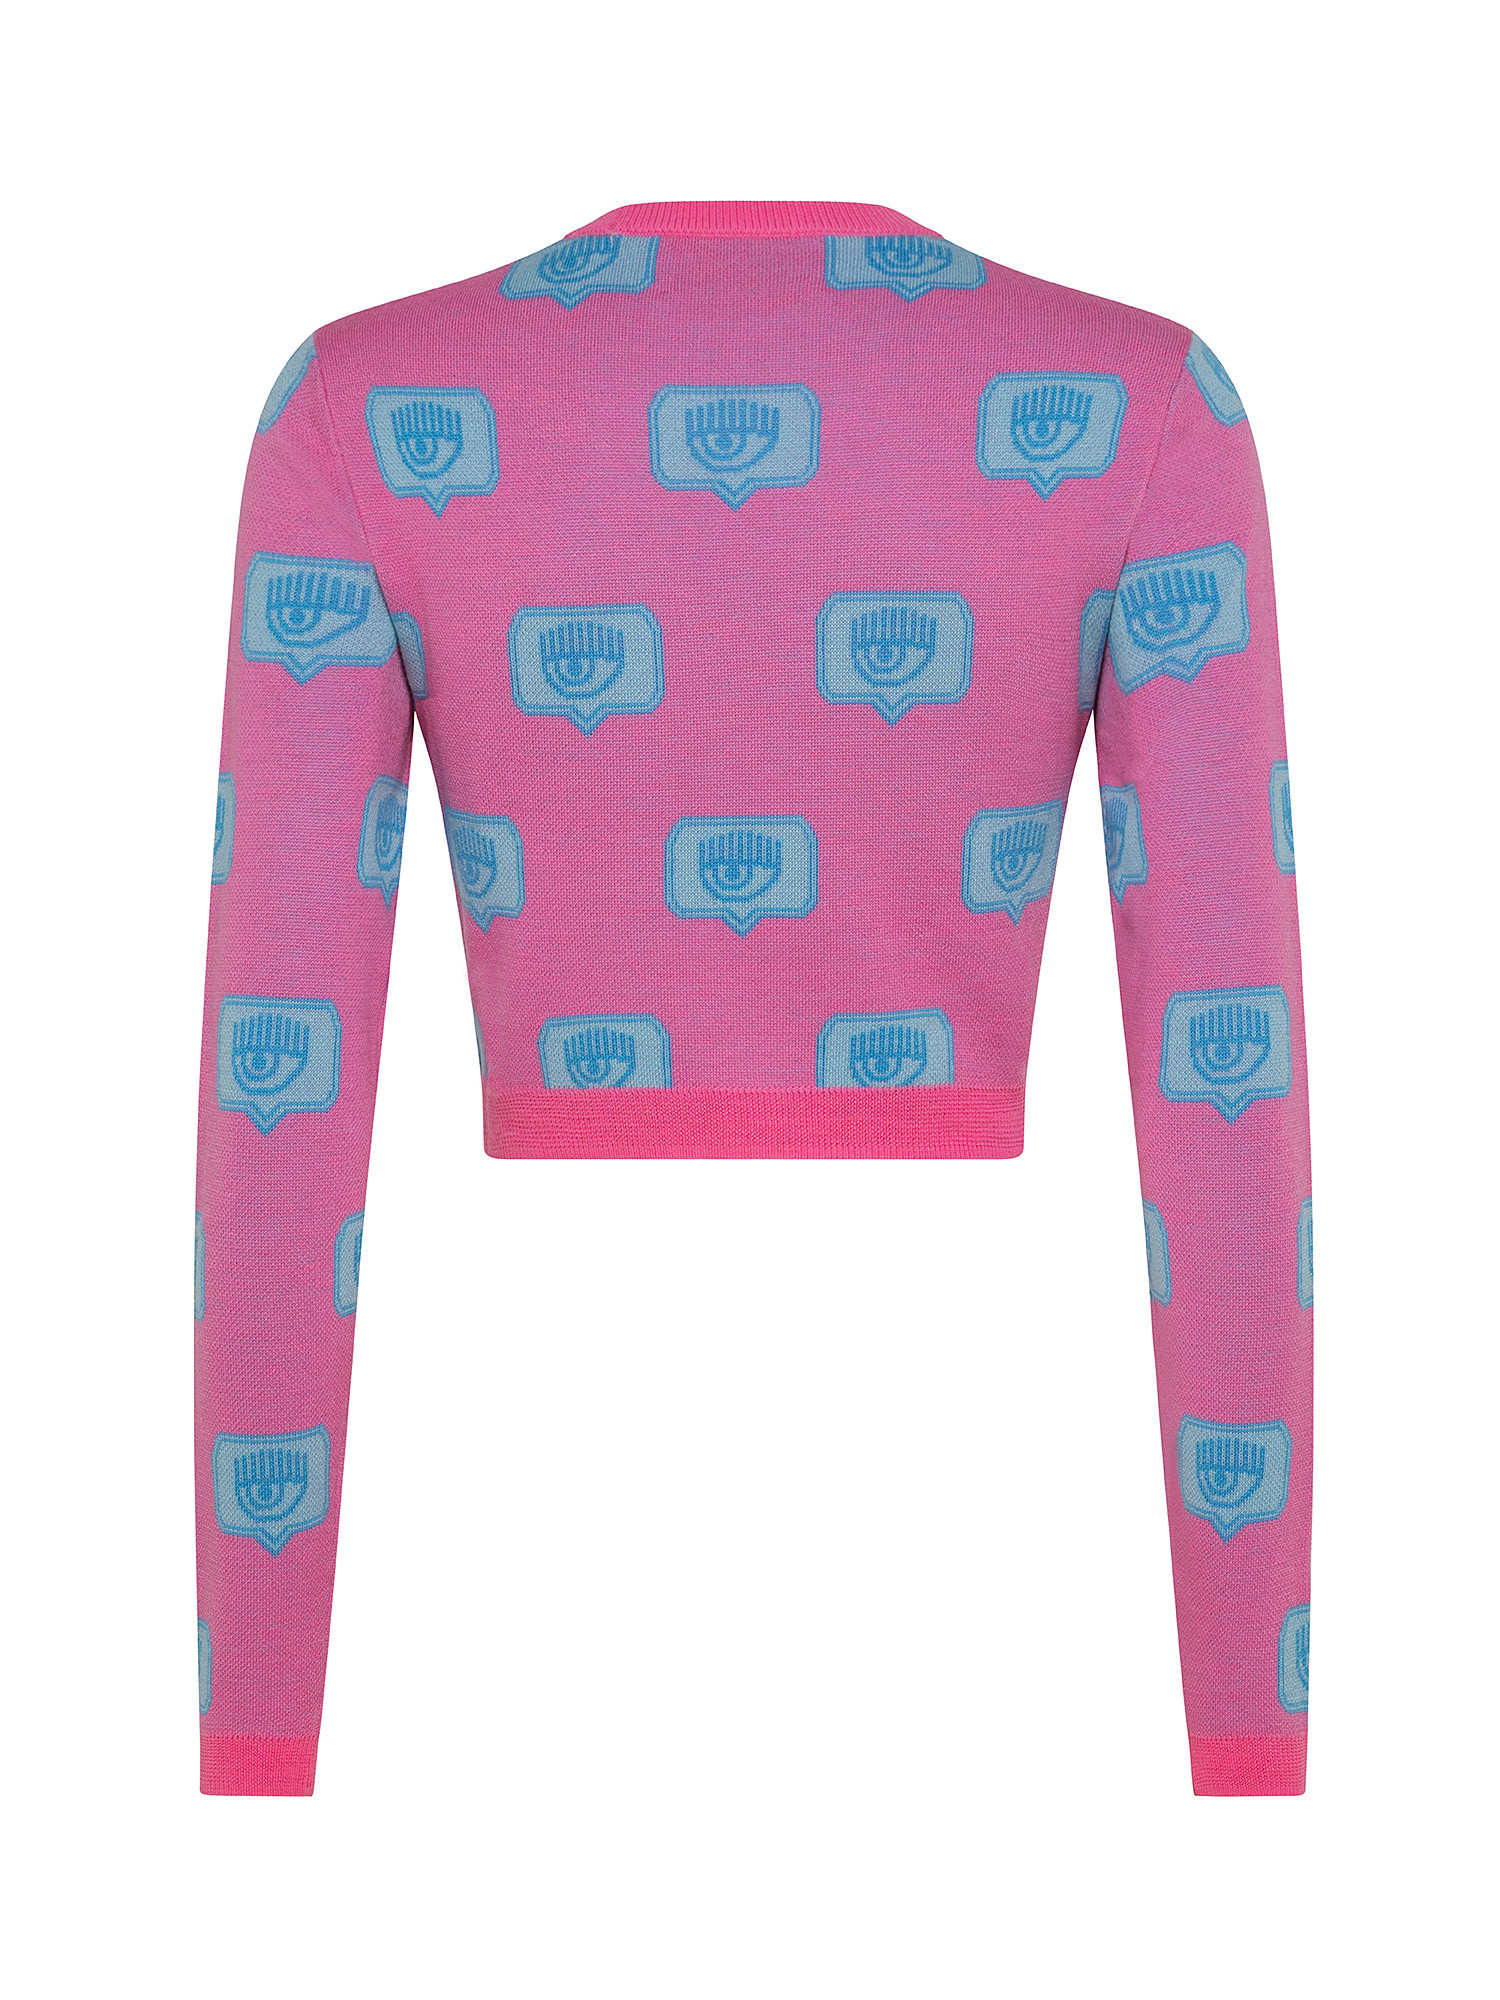 Eyelike sweater., Pink, large image number 1